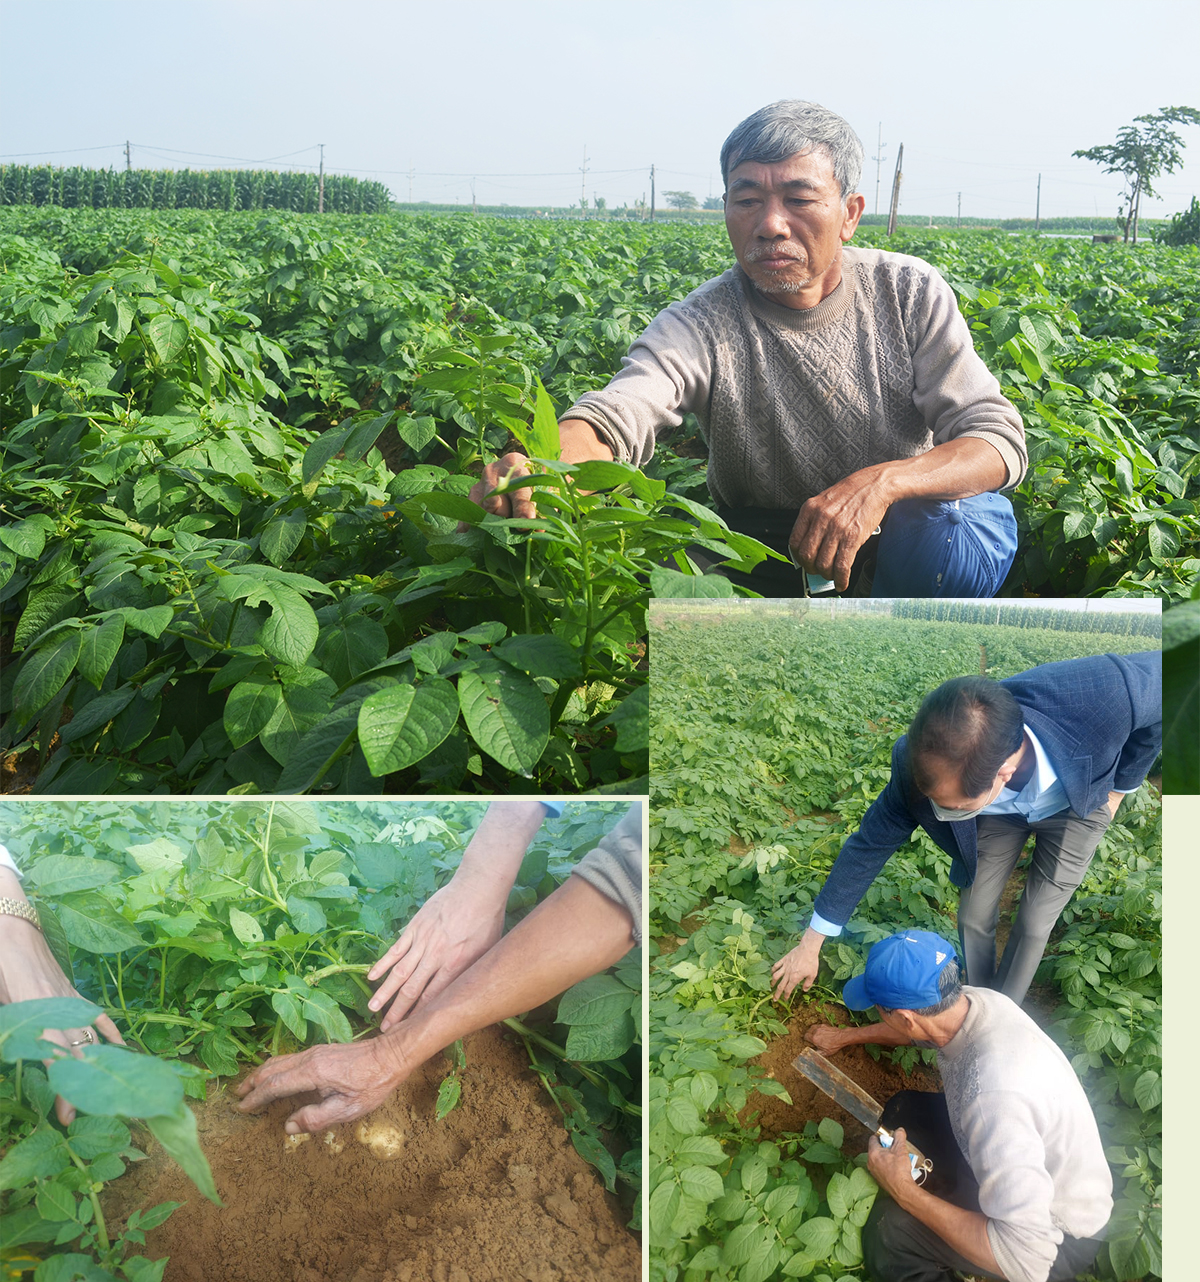 Giám đốc HTX CP dịch vụ nông nghiệp THQ, ông Trần Đình Hạnh bên những vồng khoai tây giống.